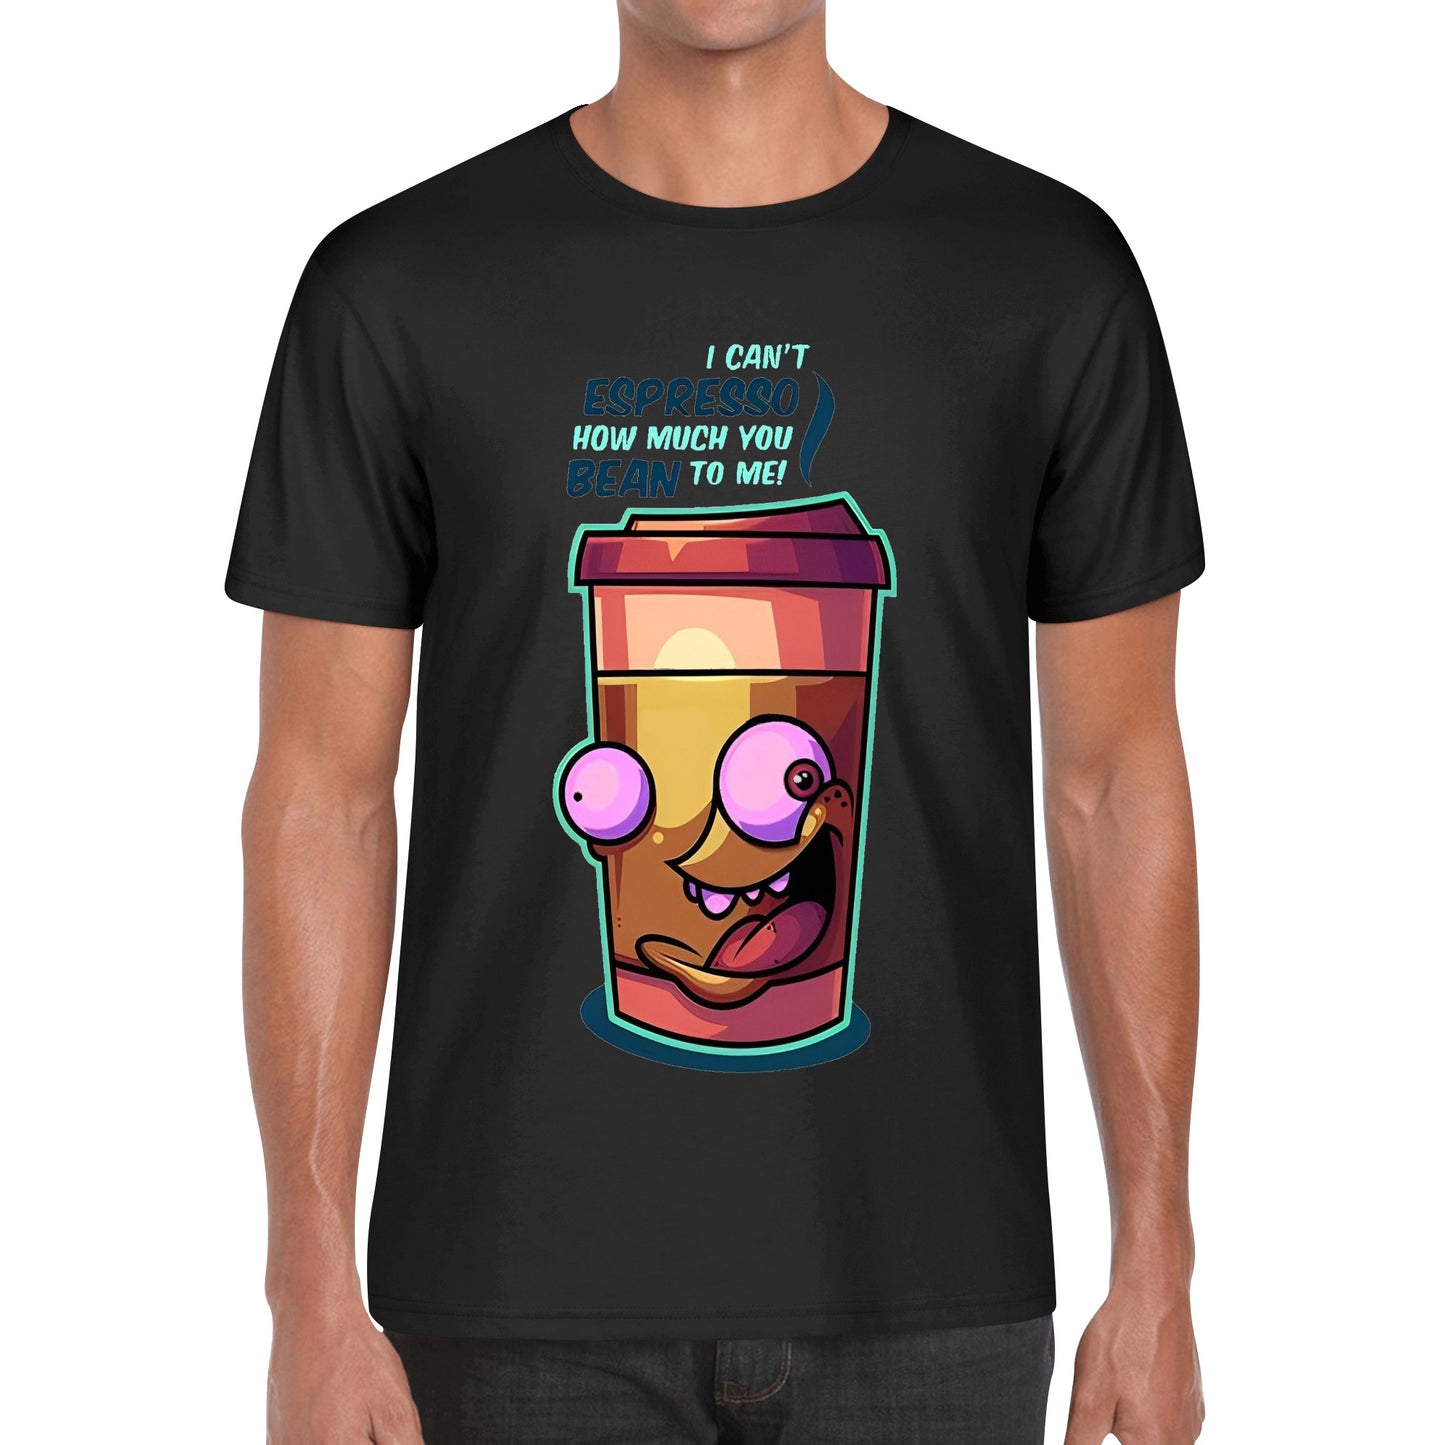 T-Shirt crazy espresso DrinkandArt